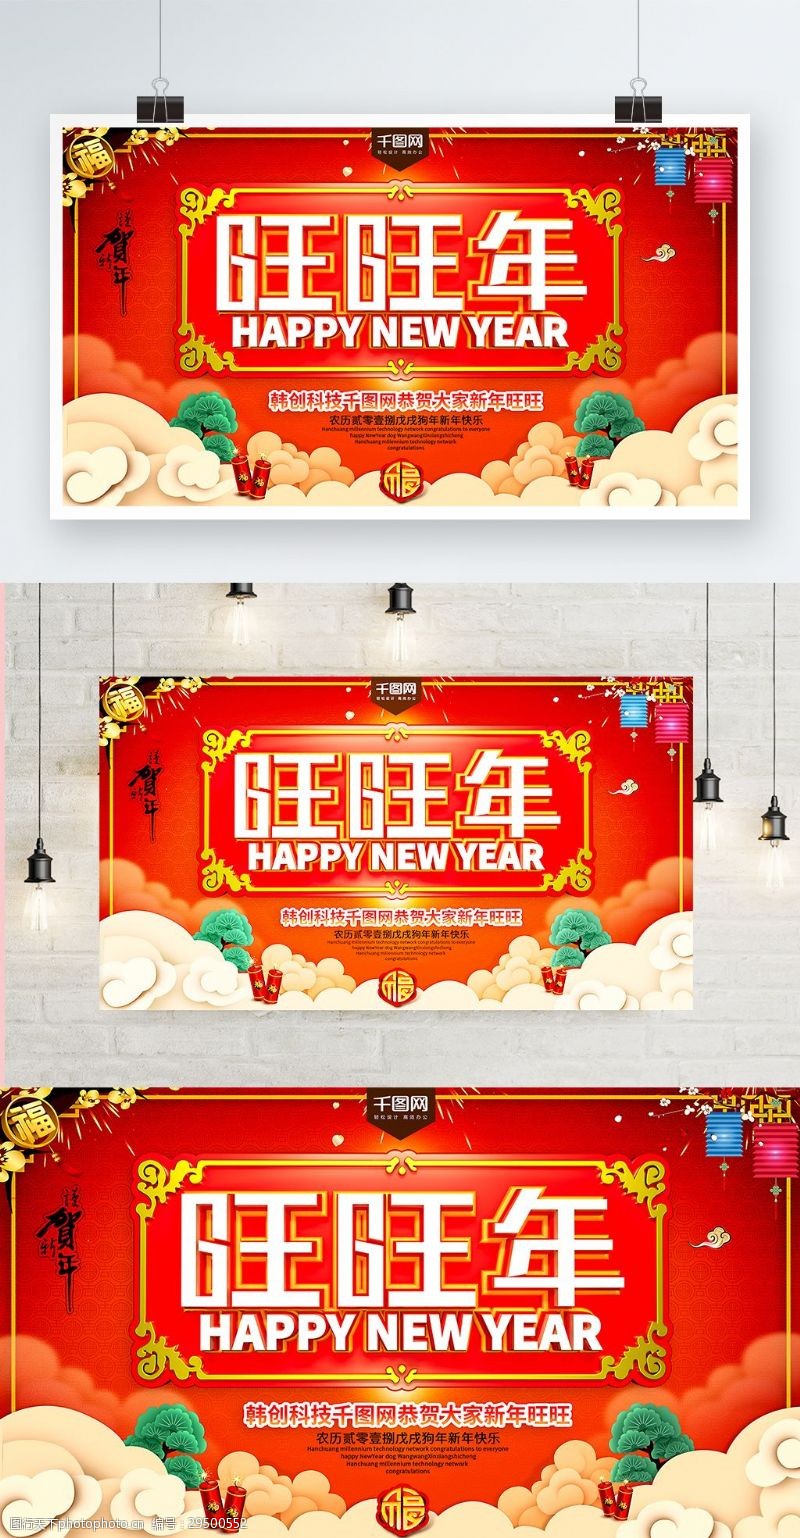 戊戌新年2018新春喜庆旺旺年海报